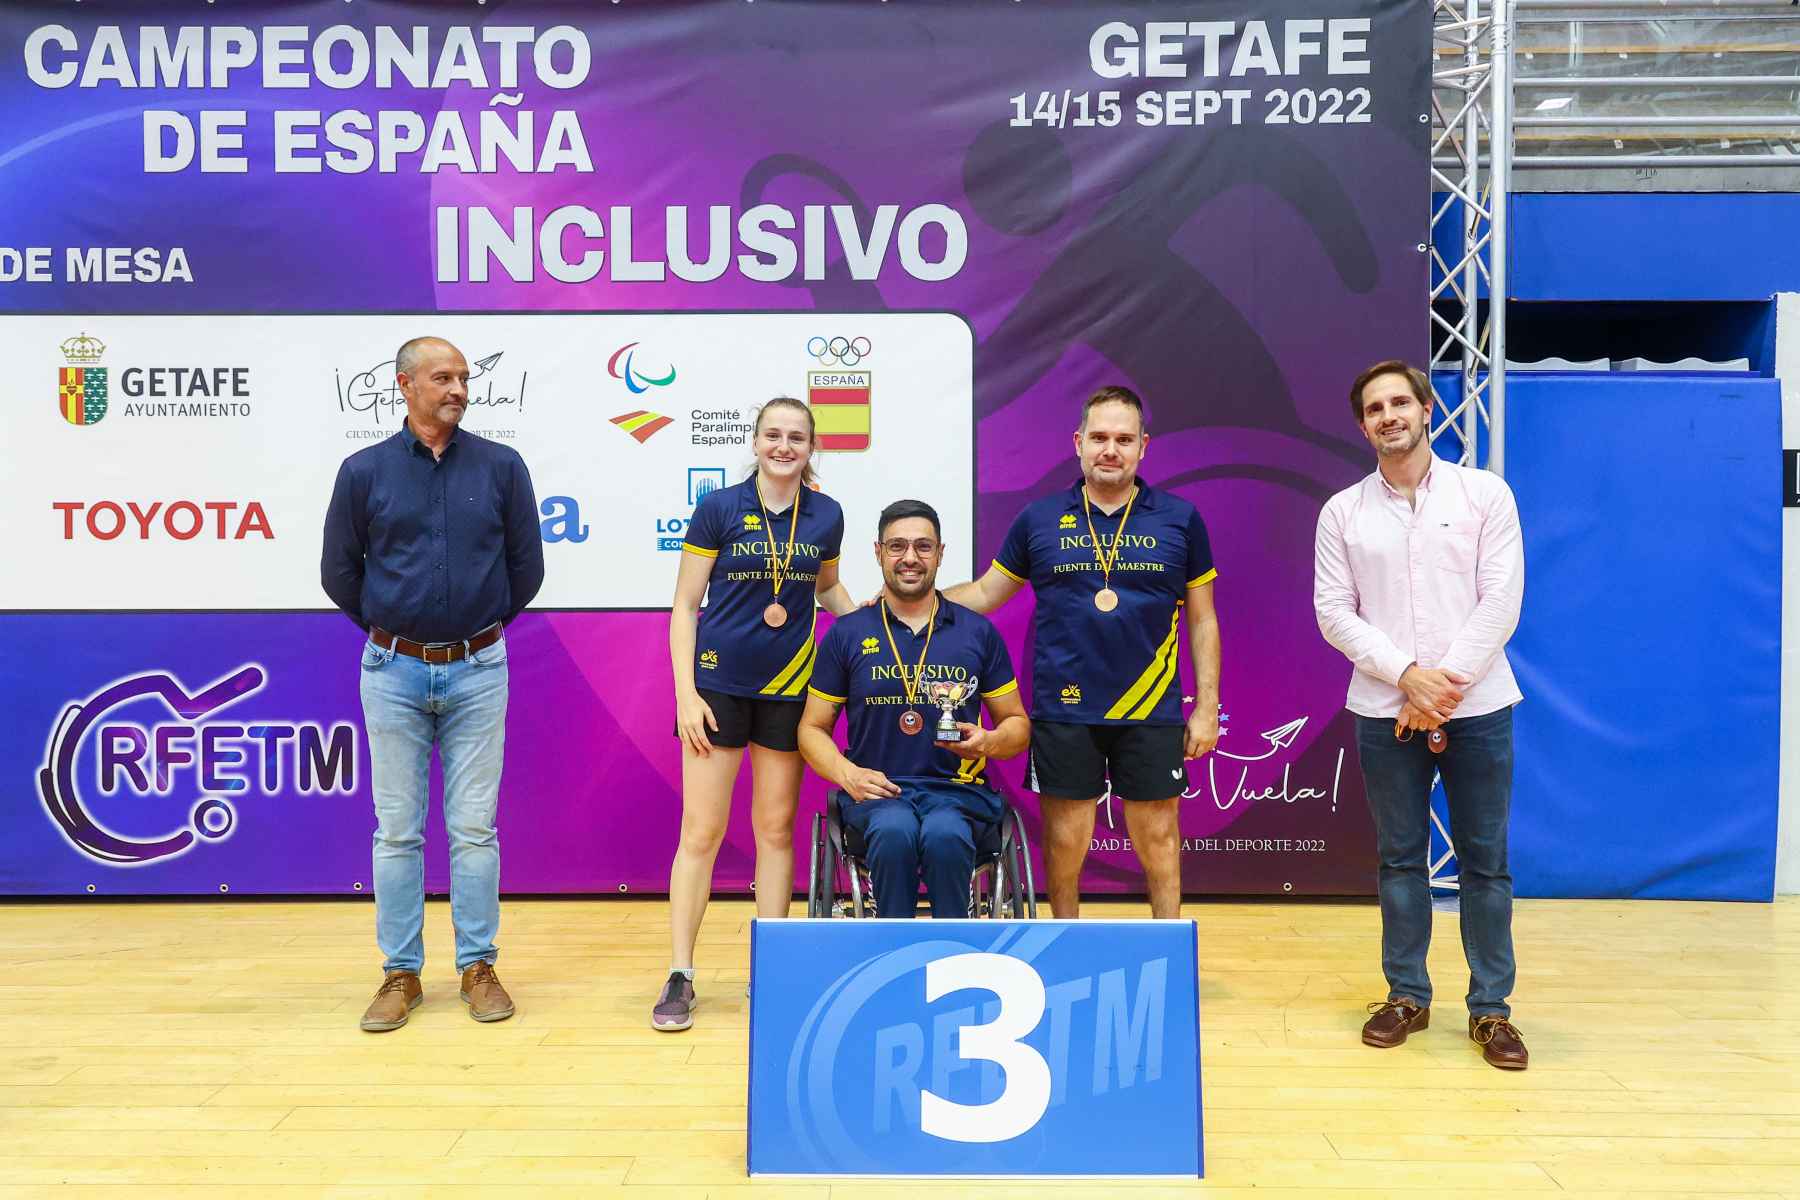 II Campeonato de España Inclusivo Fundación Sanitas (Foto: Alba Pacheco)